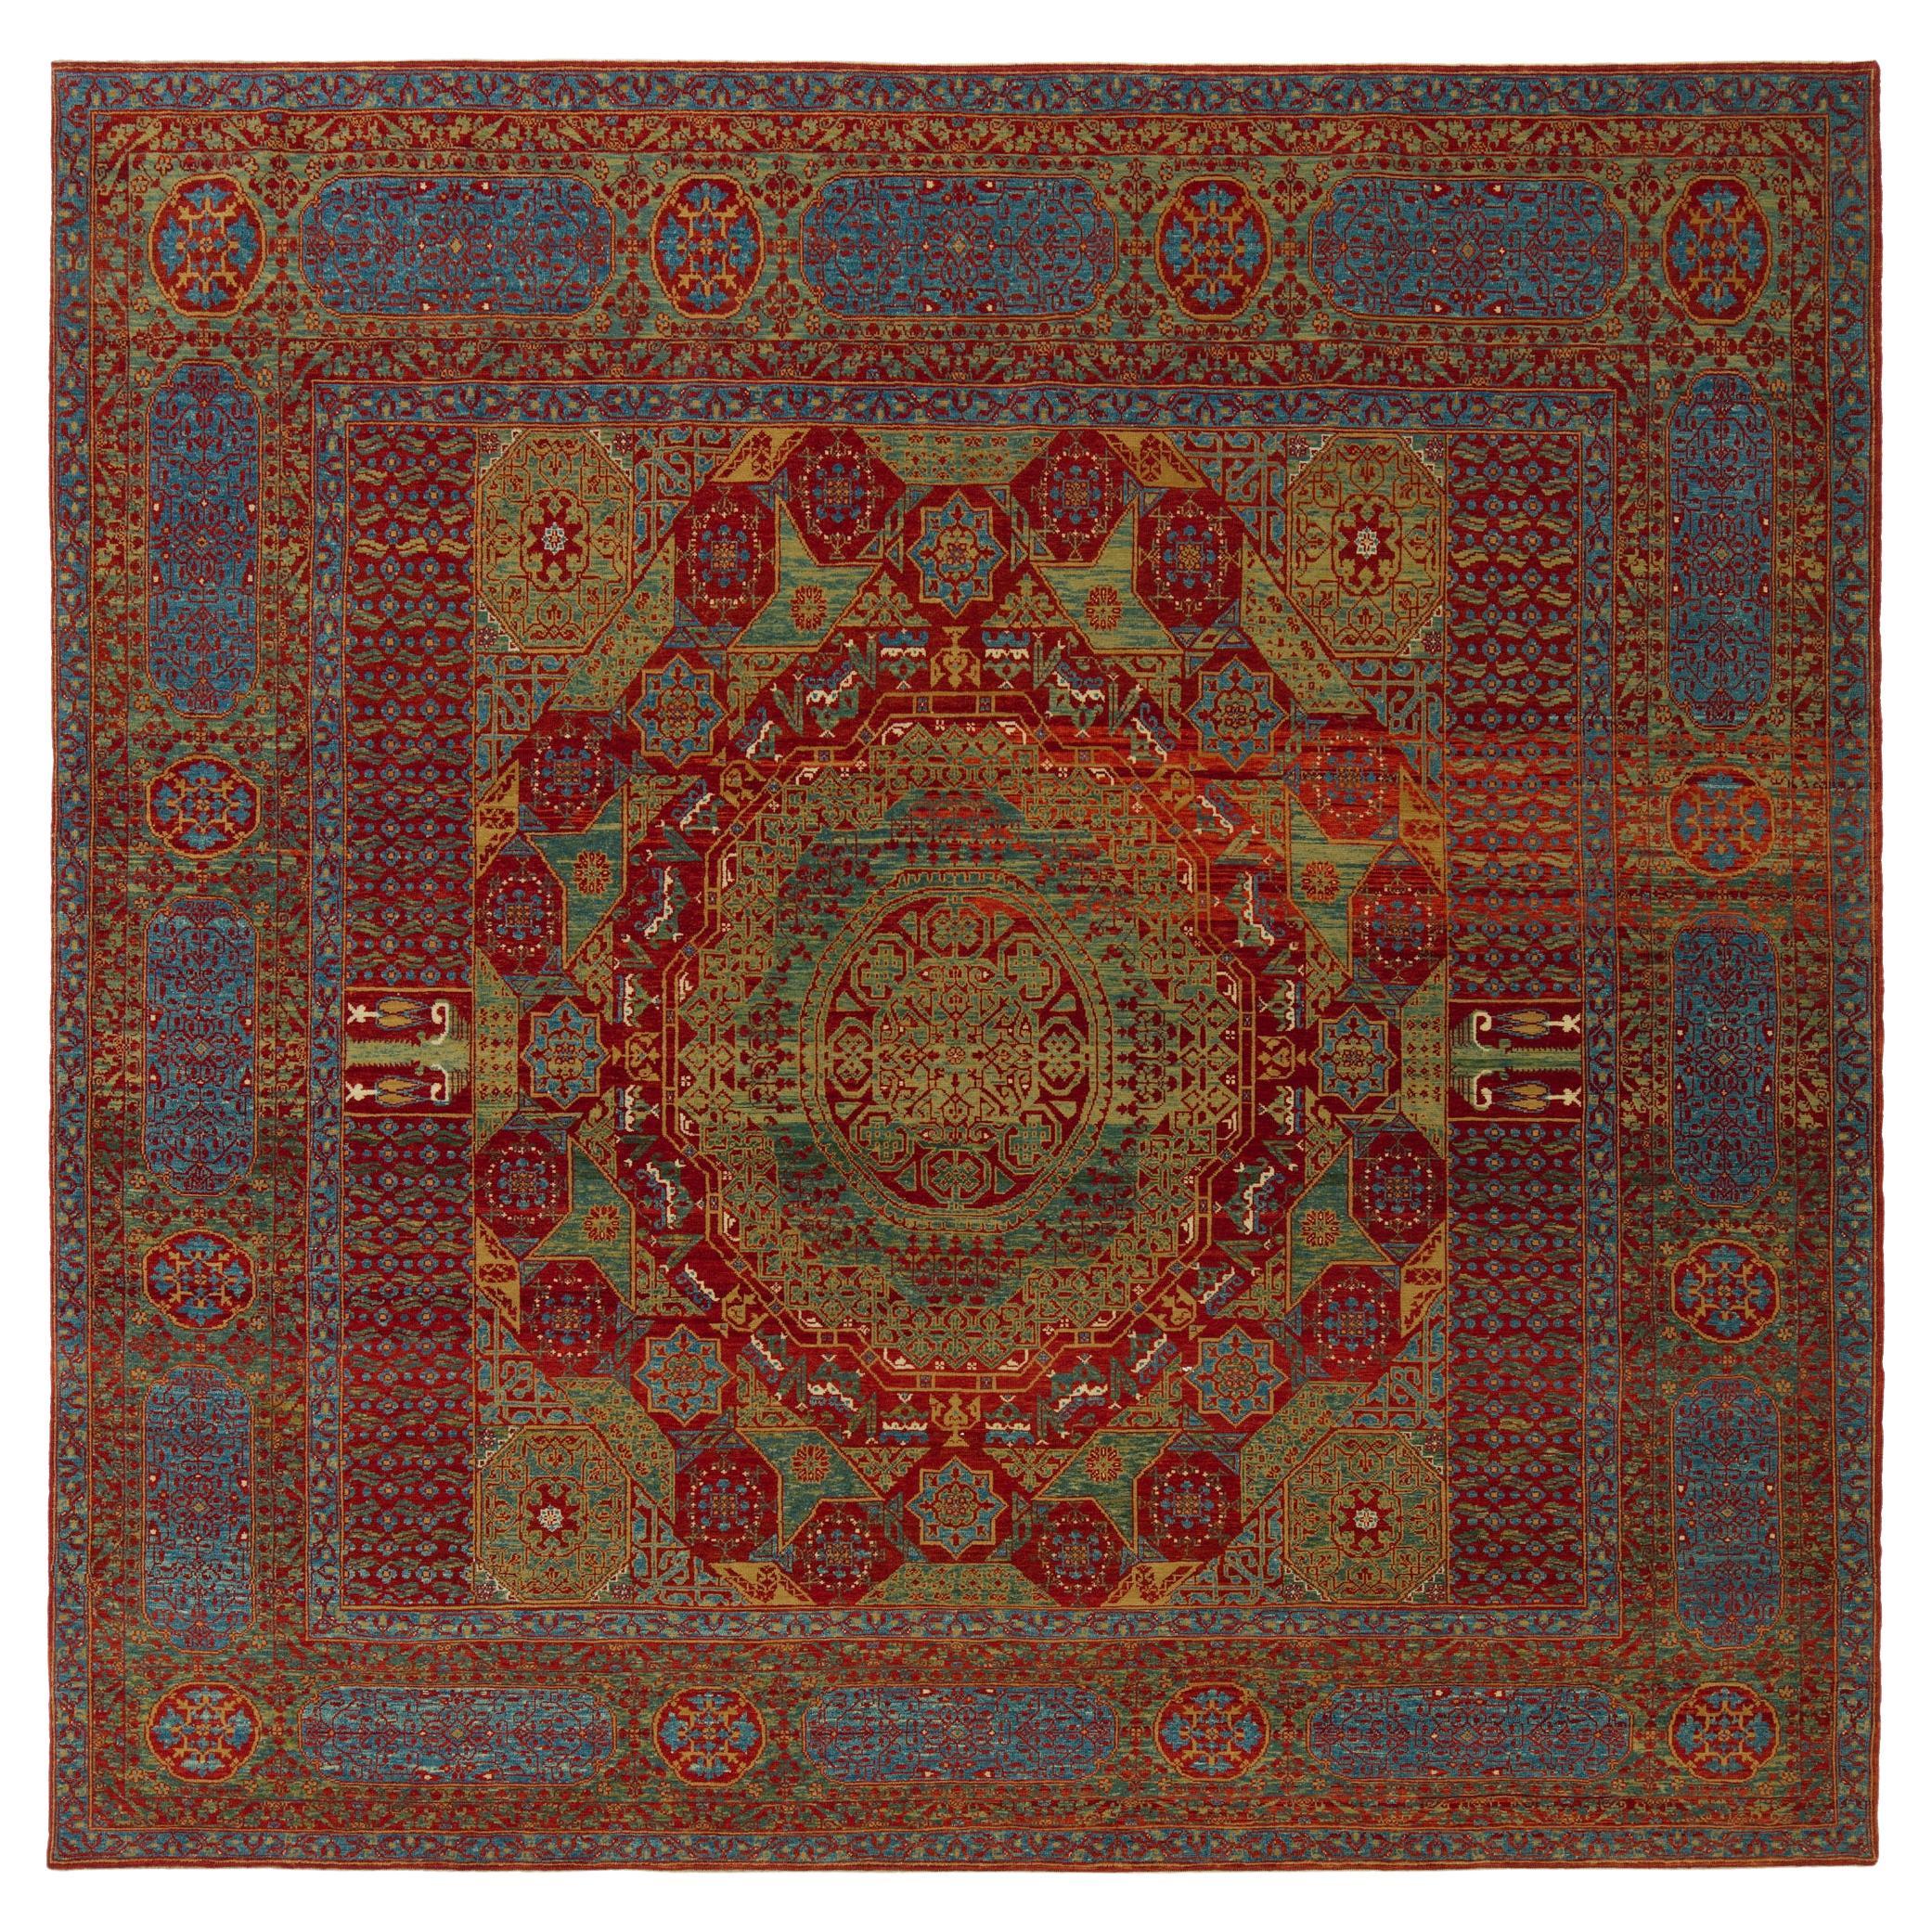 Ararat Rugs The Simonetti Mamluken Teppich 16. Jh. Revival Teppich, Quadratisch Natürlich gefärbt